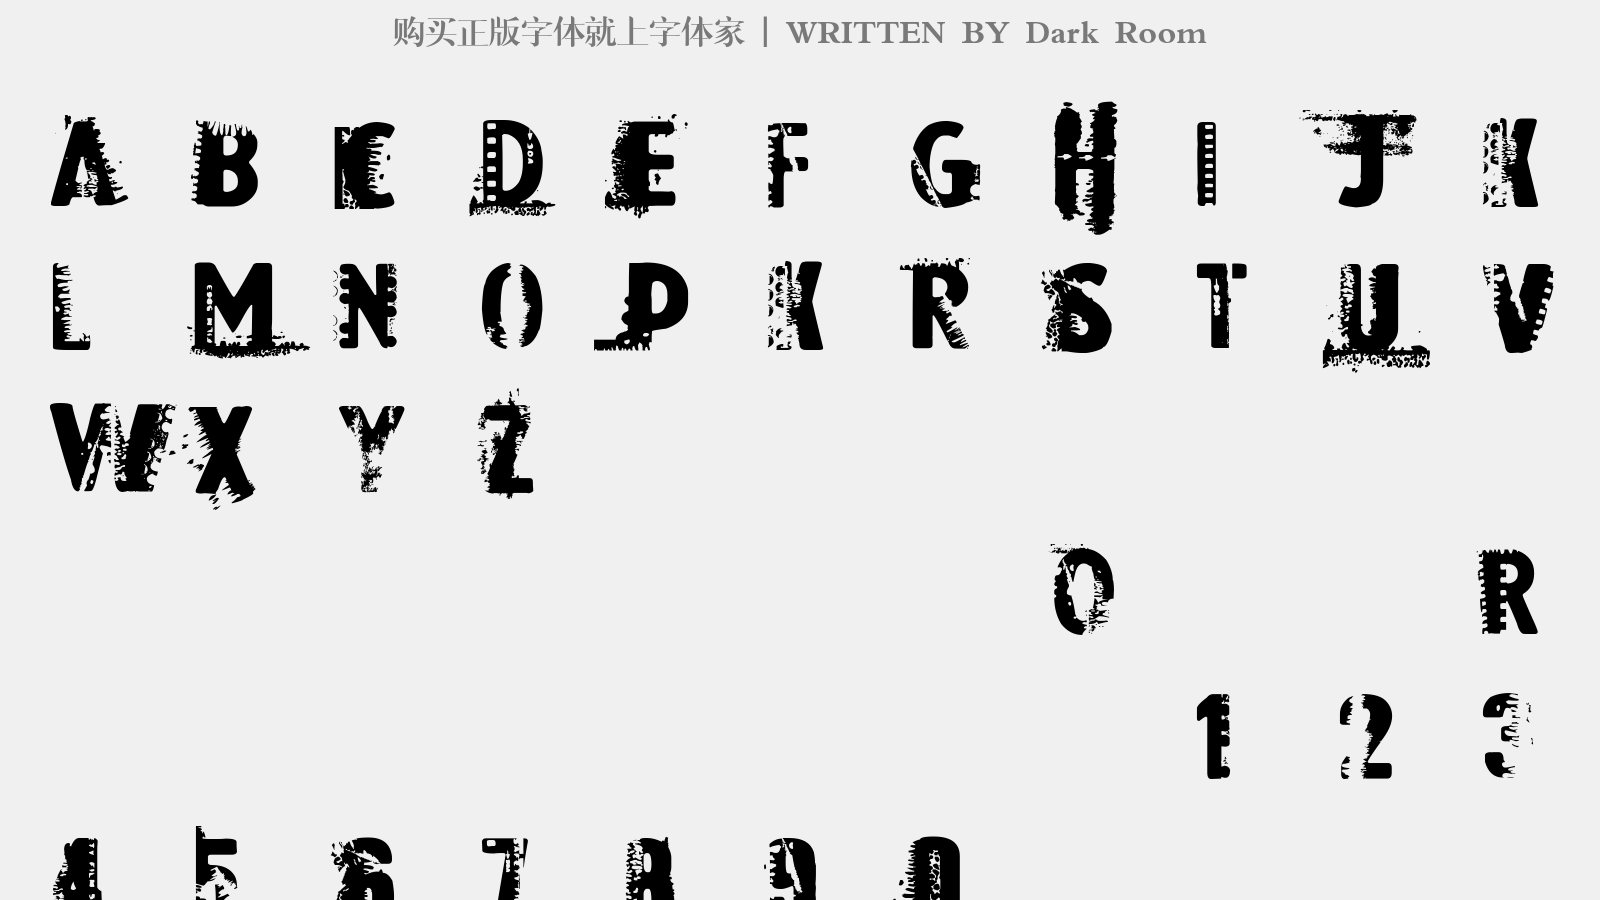 Dark Room - 大写字母/小写字母/数字